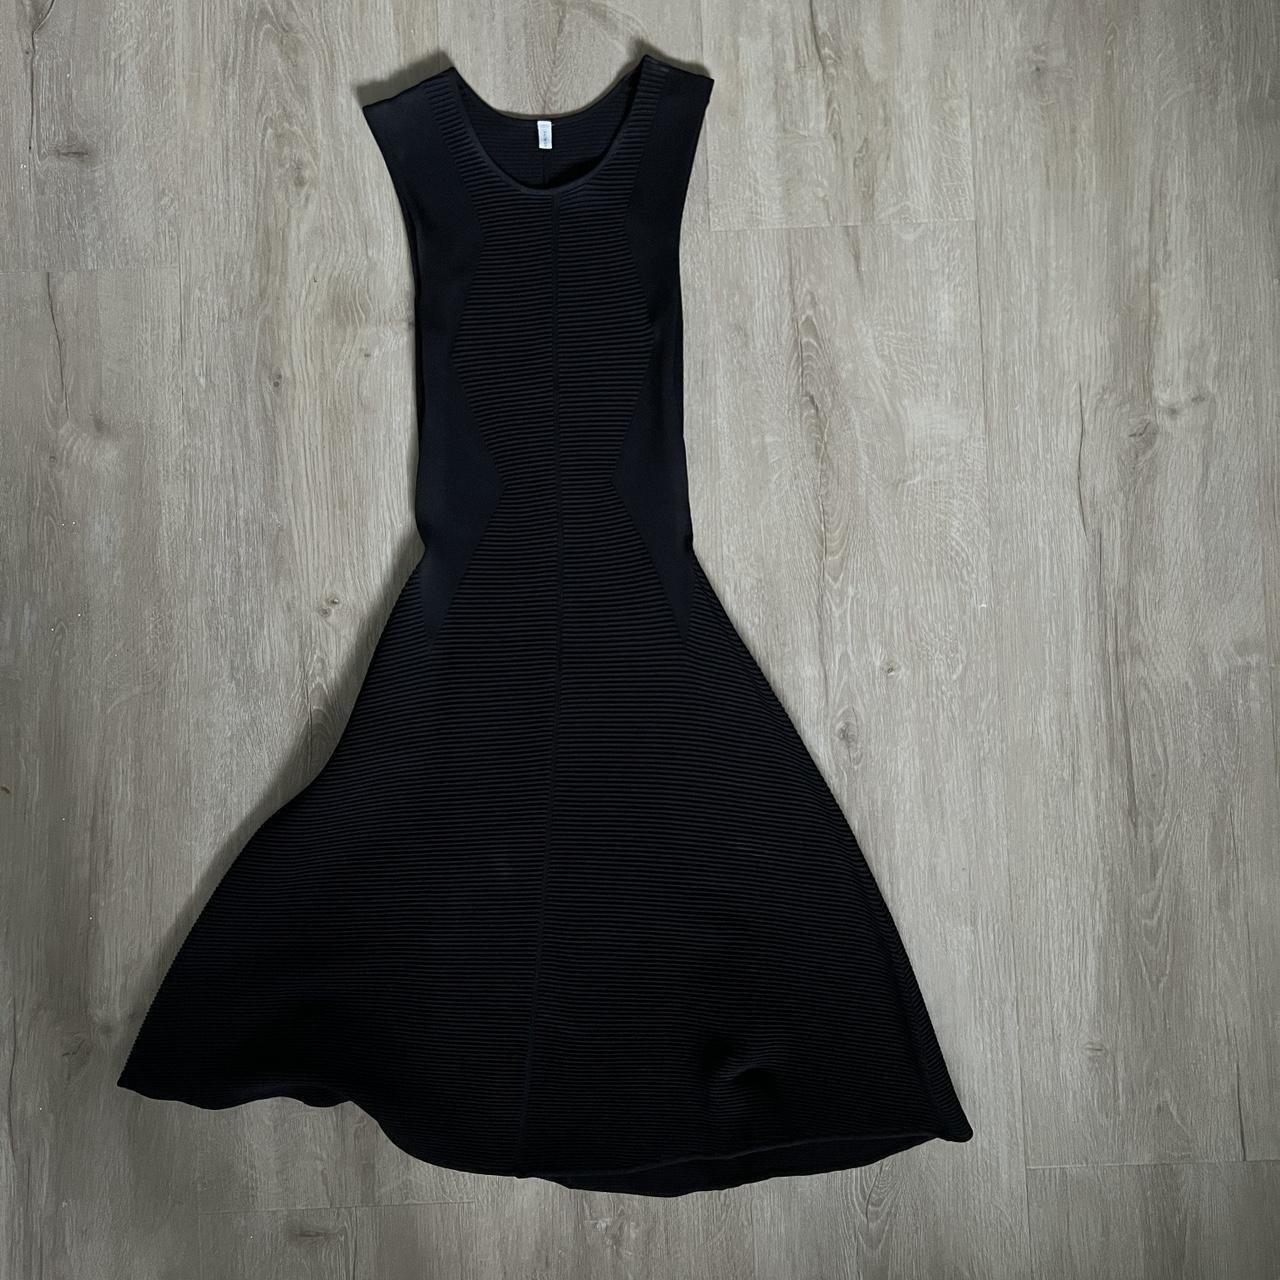 Faith Connexion Women's Black Dress (4)